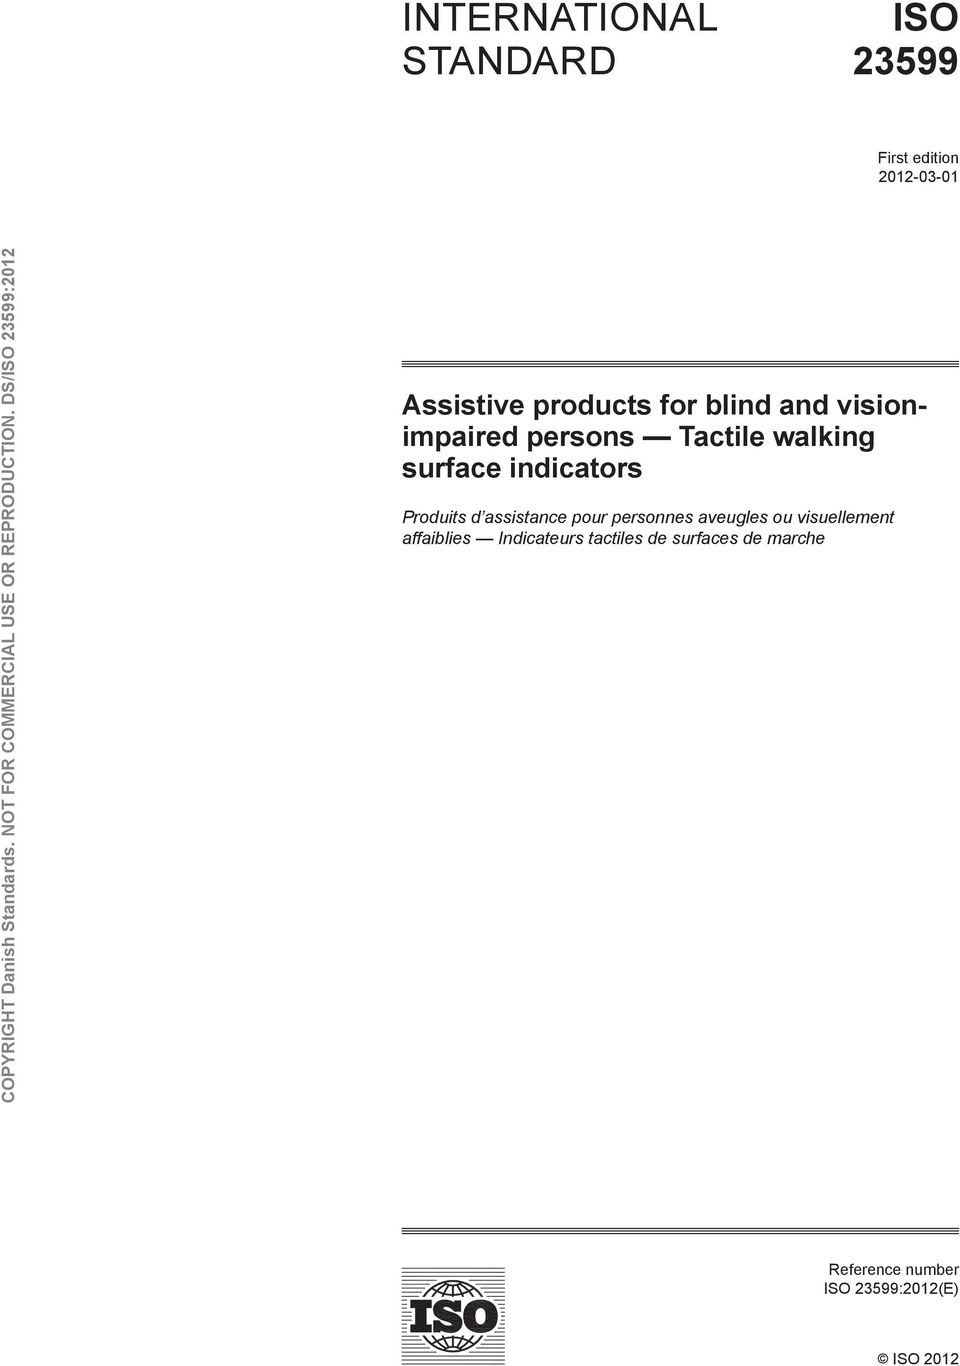 Produits d assistance pour personnes aveugles ou visuellement affaiblies